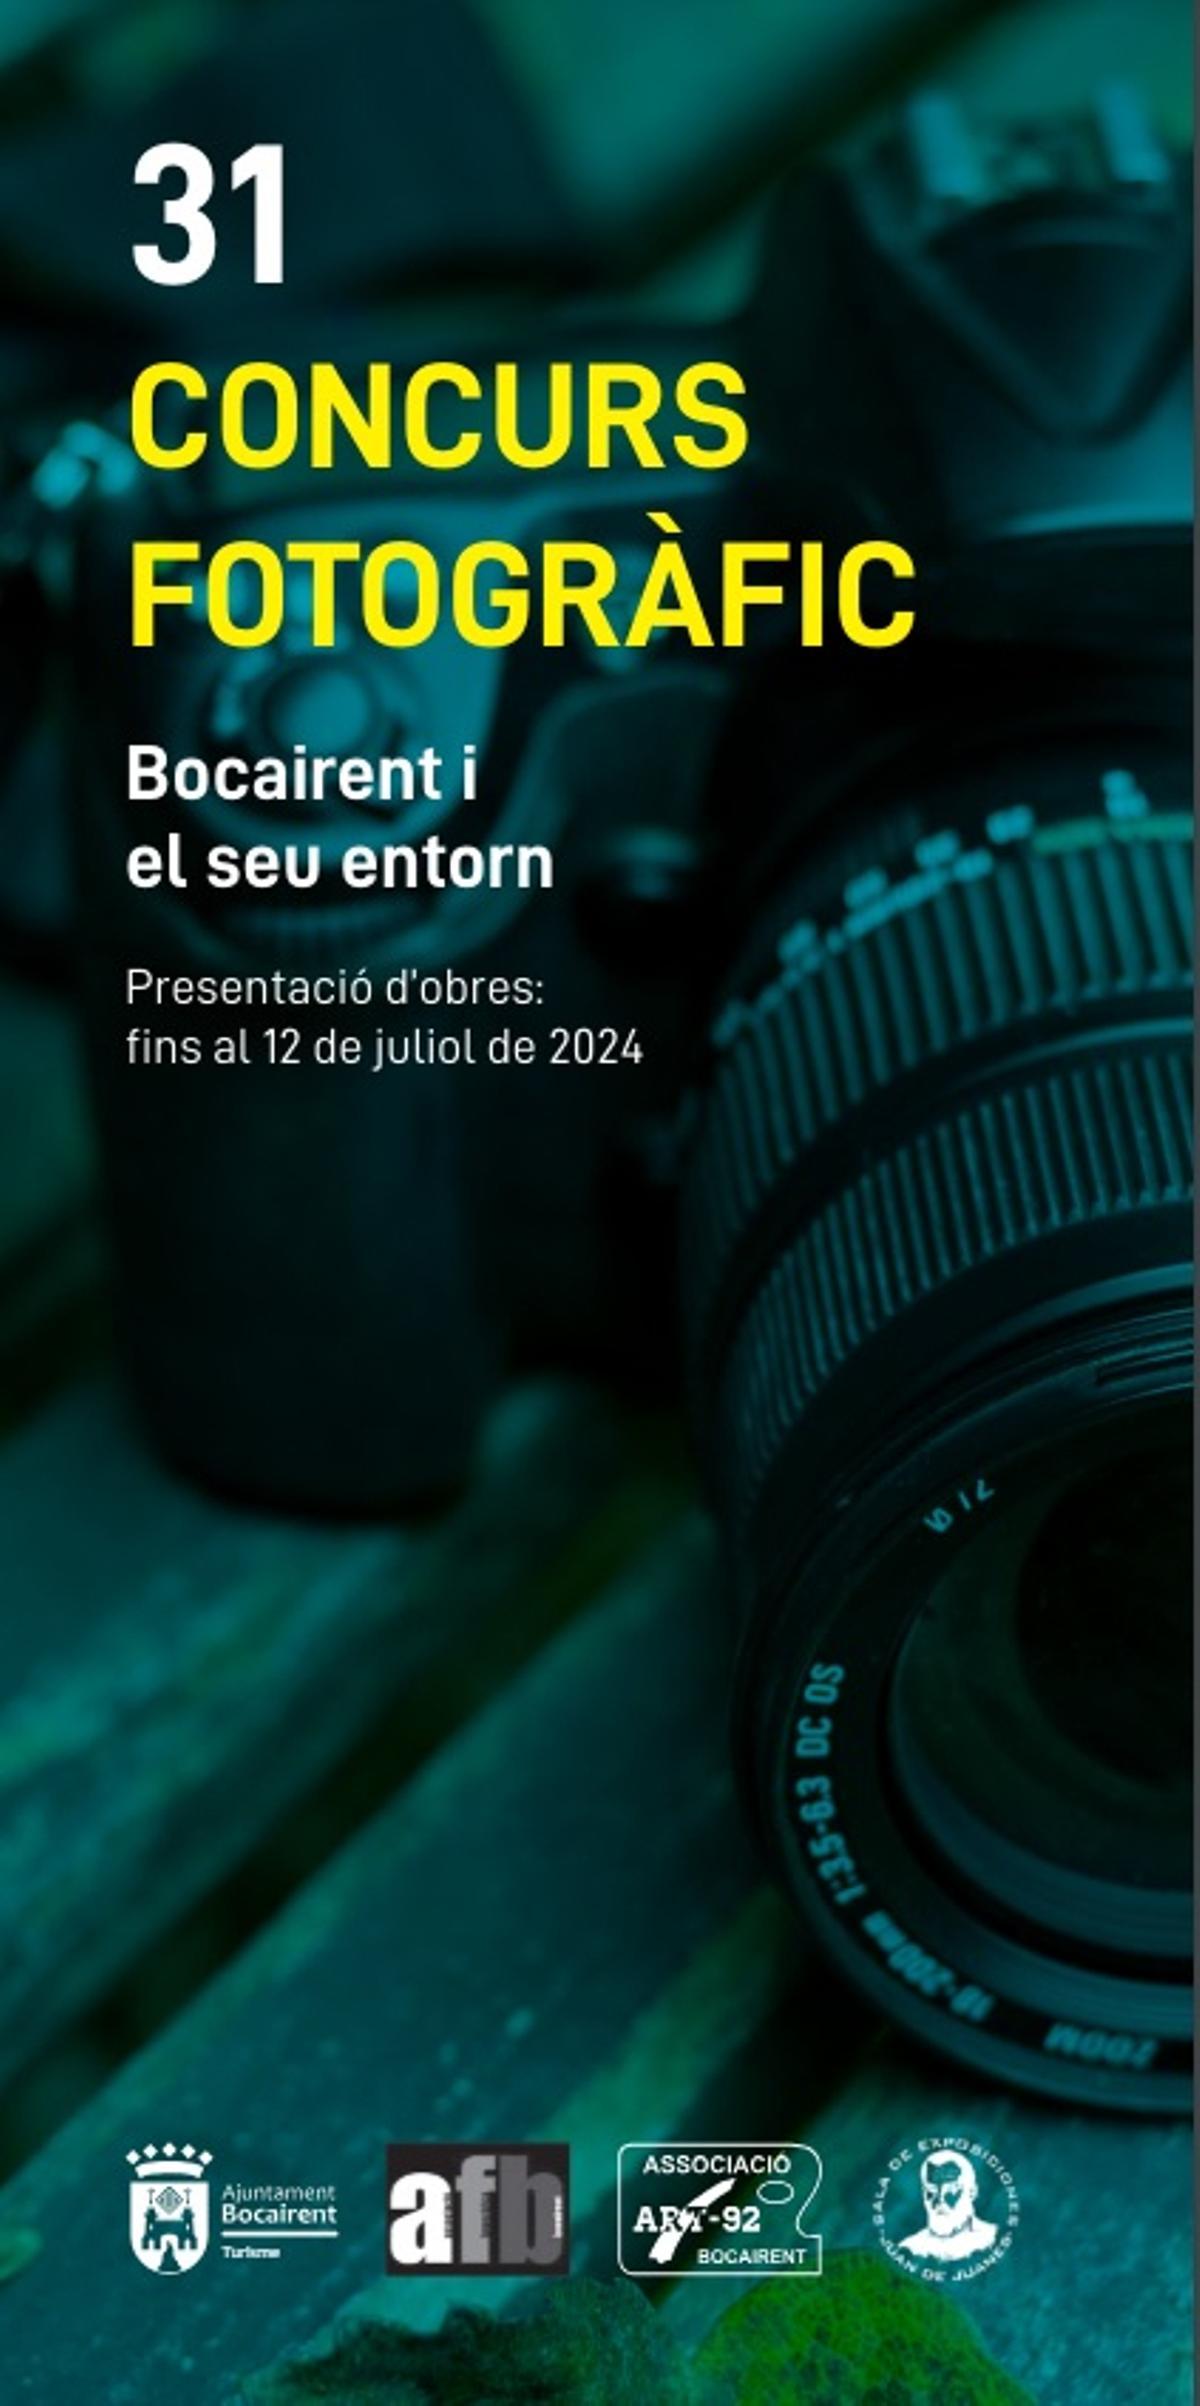 Cartel de la 31ª edición del concurso fotográfico celebrado en Bocairent.